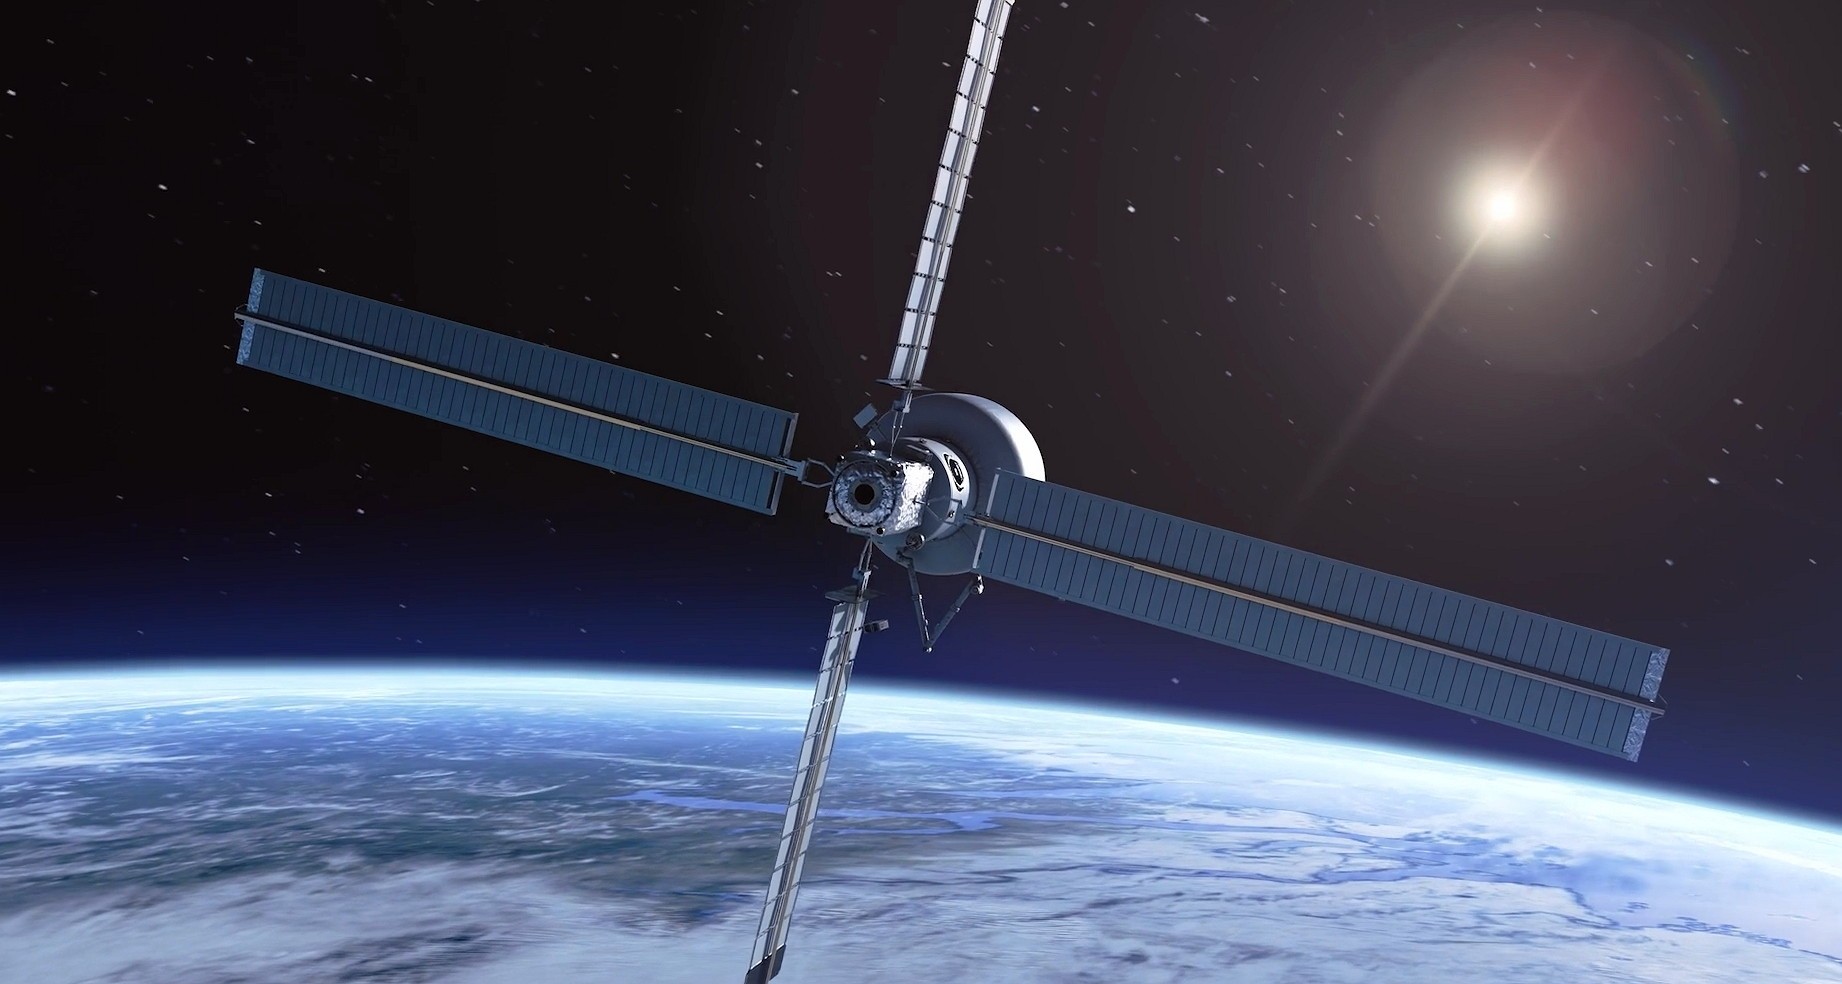 NASA, Lockheed Martin i Airbus zbudują komercyjną stację orbitalną Starlab, która potrafi samodzielnie nawigować